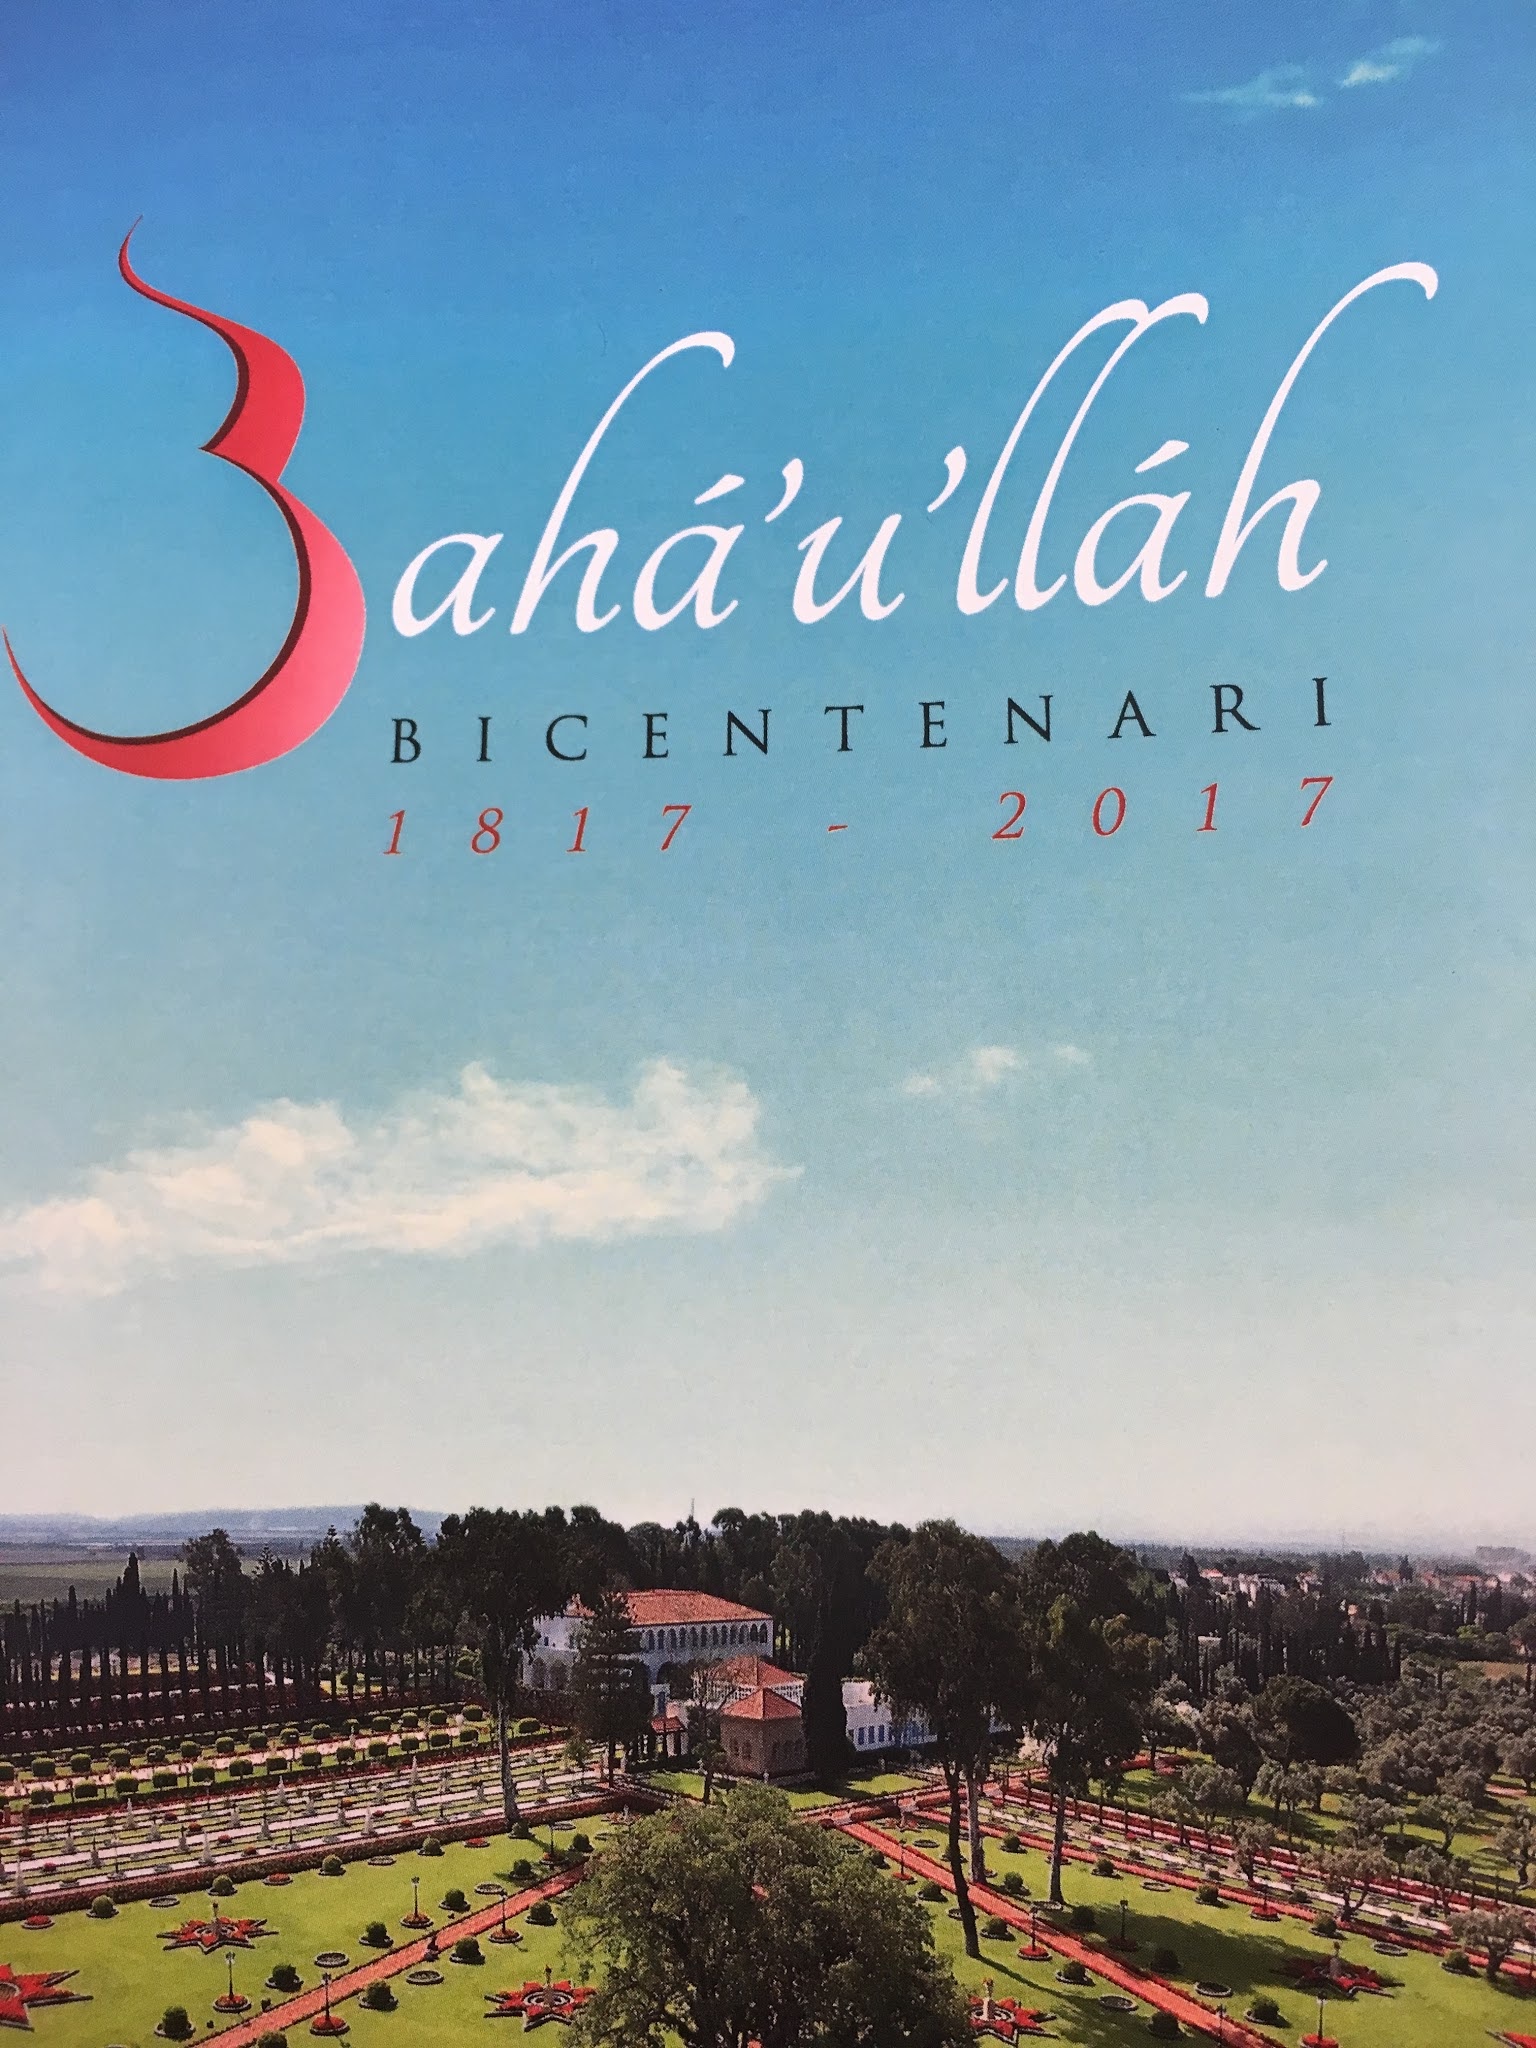 Bicentenari del naixement de Bahá'u'lláh